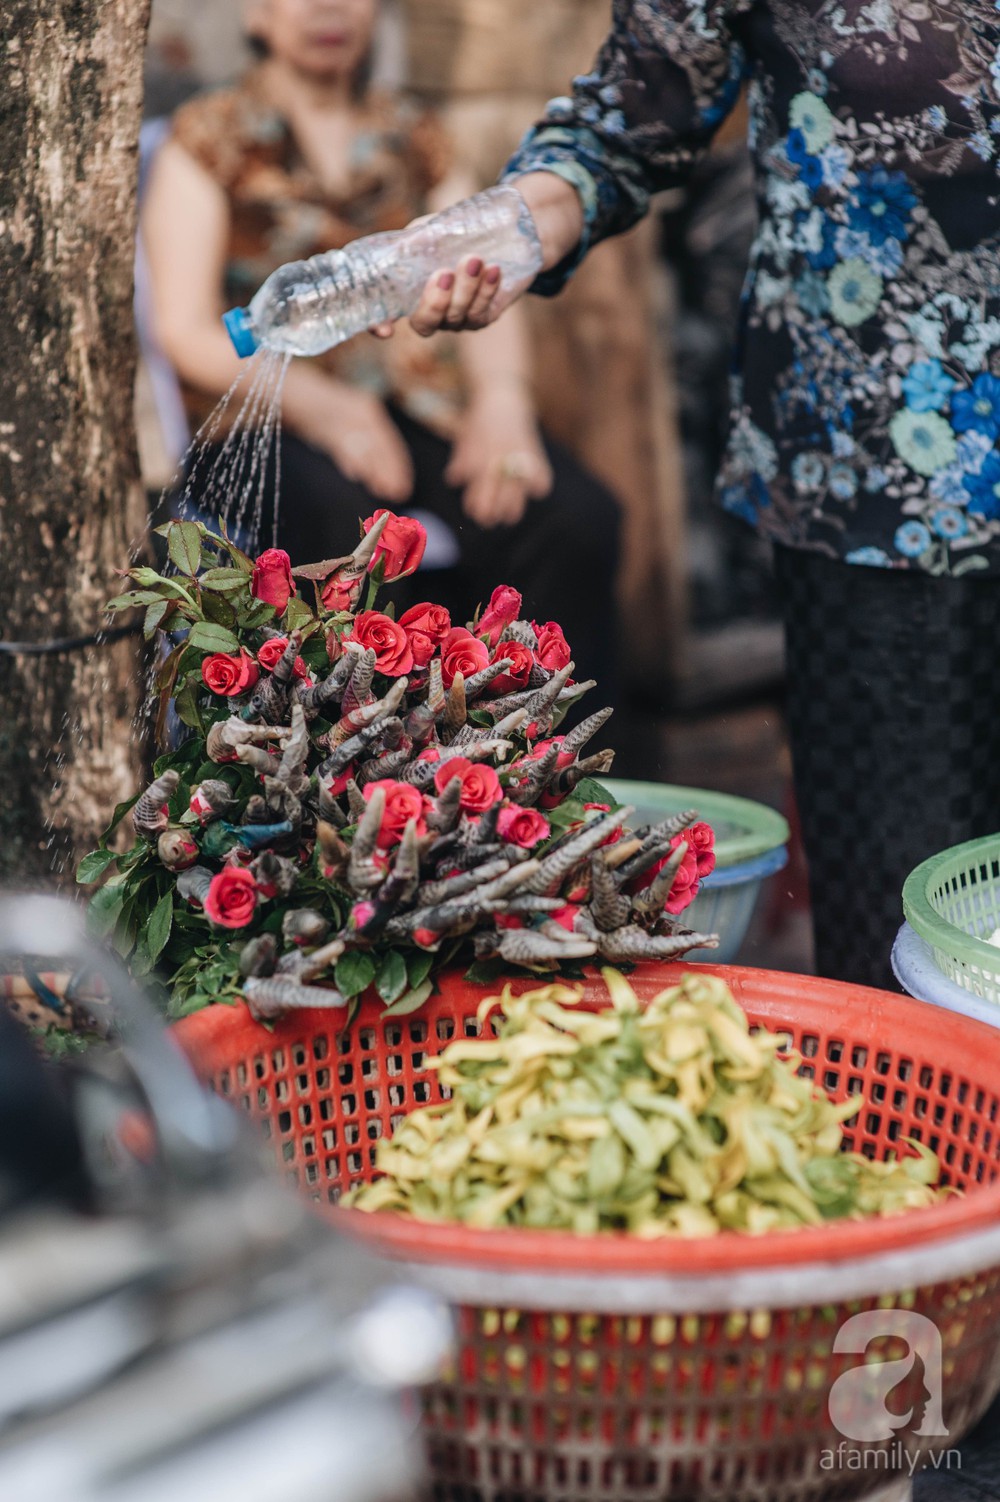 Triết lý sung sướng phụ nữ hiện đại nào cũng phải học từ cụ bà 81 tuổi bán hoa gói lá 70 năm ở góc chợ Đồng Xuân - Ảnh 7.